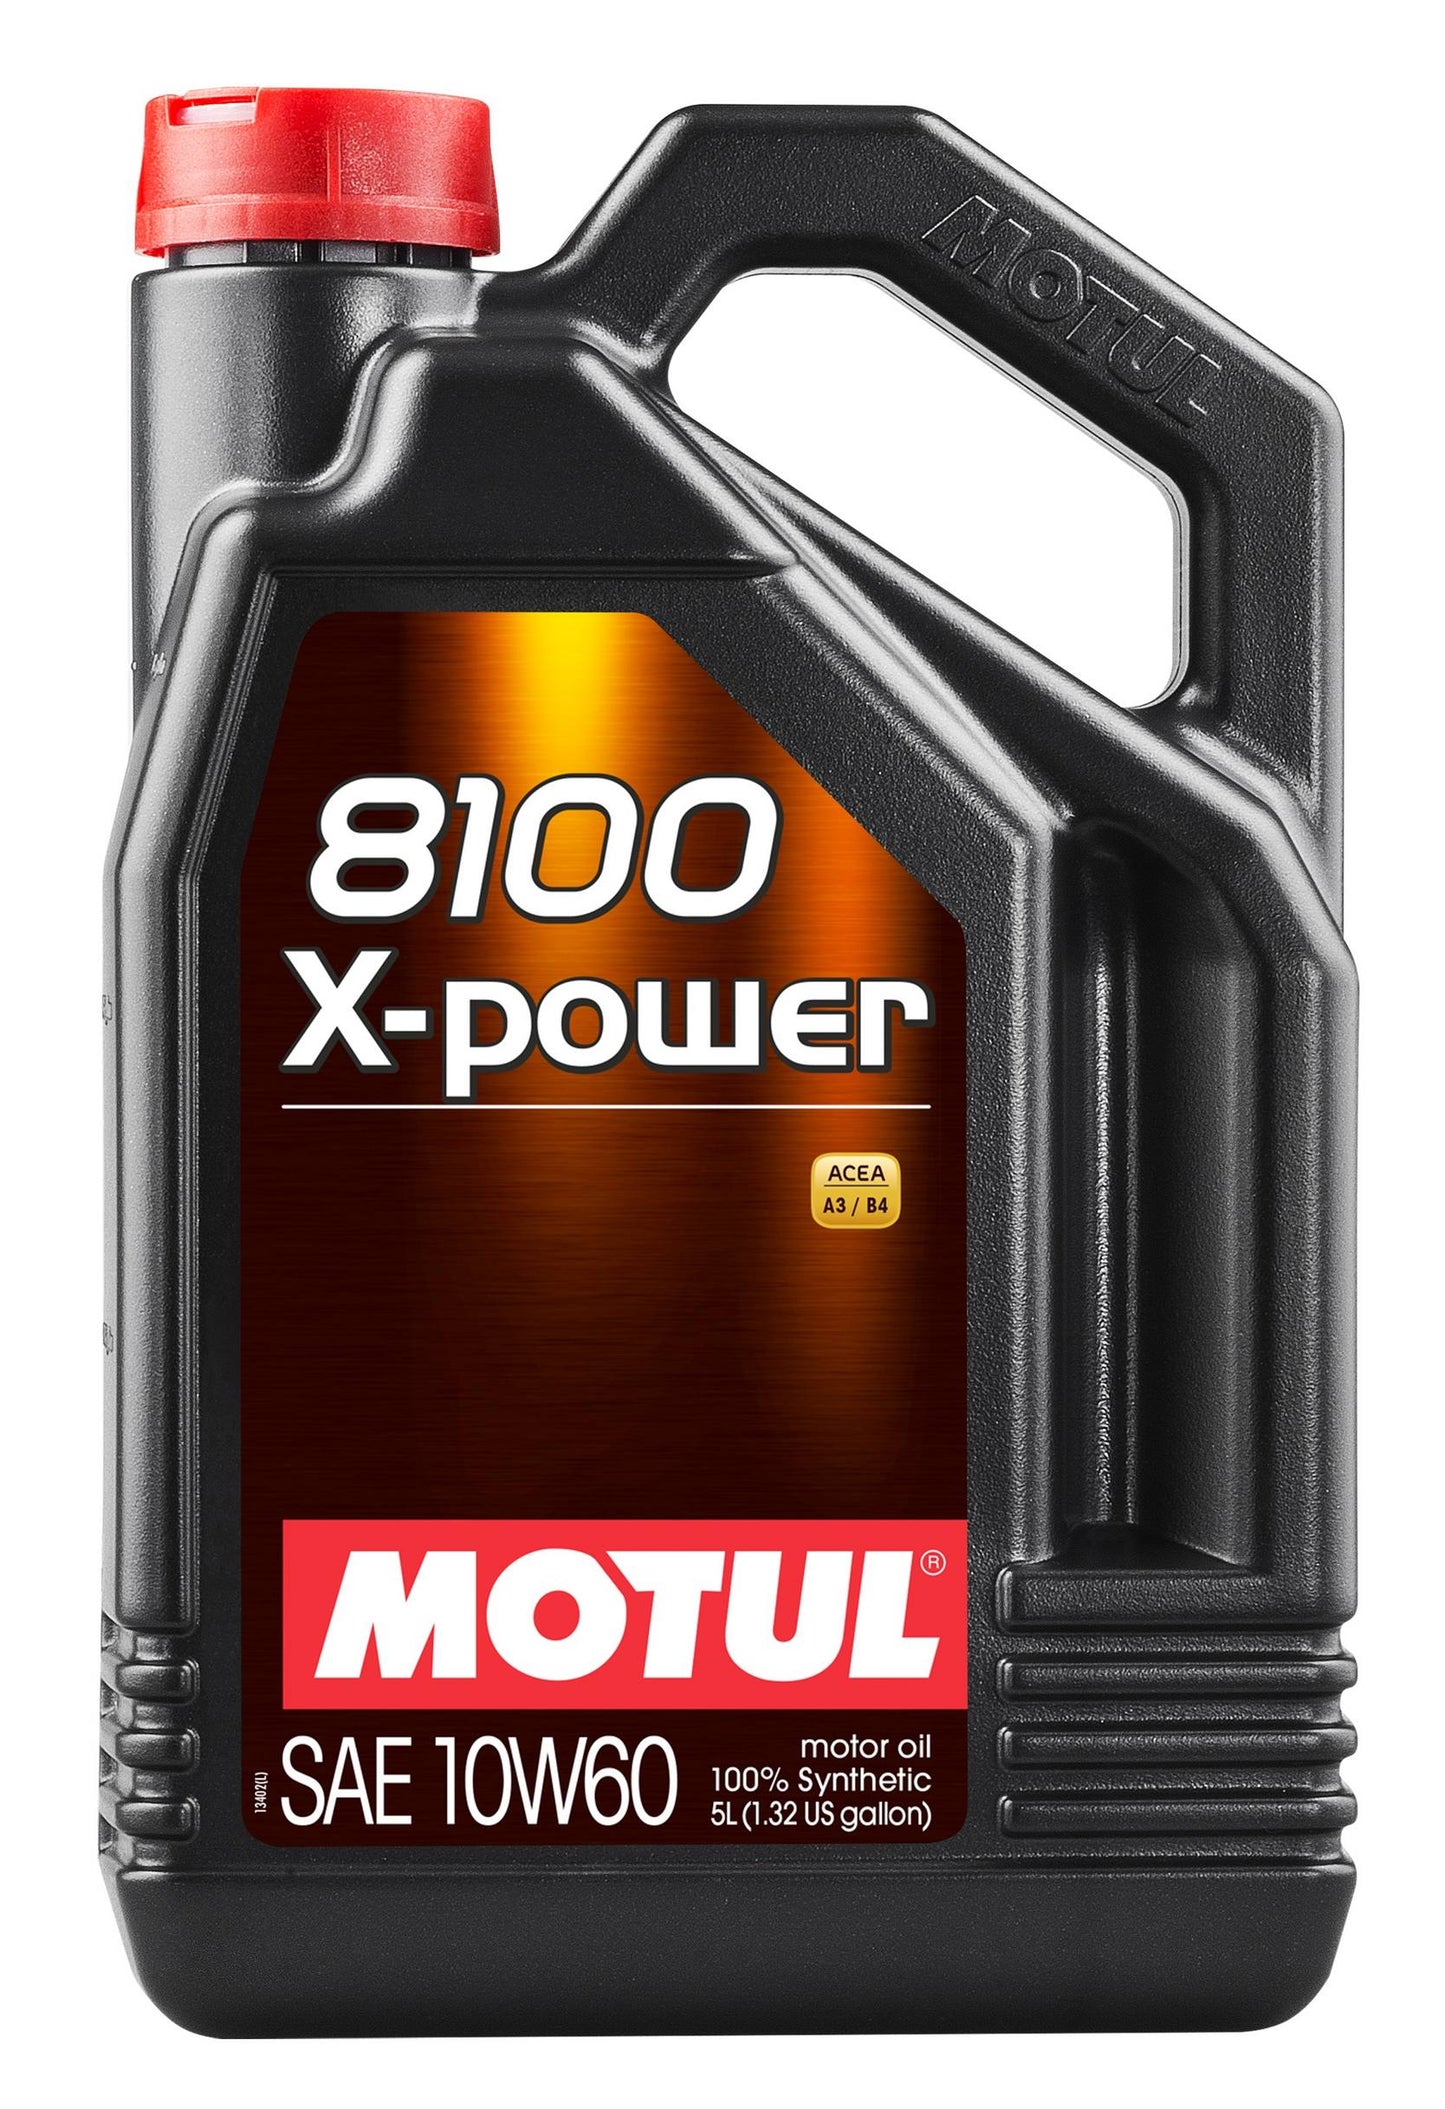 MOTUL - 8100 X-Power 100% Synthetic Engine Oil